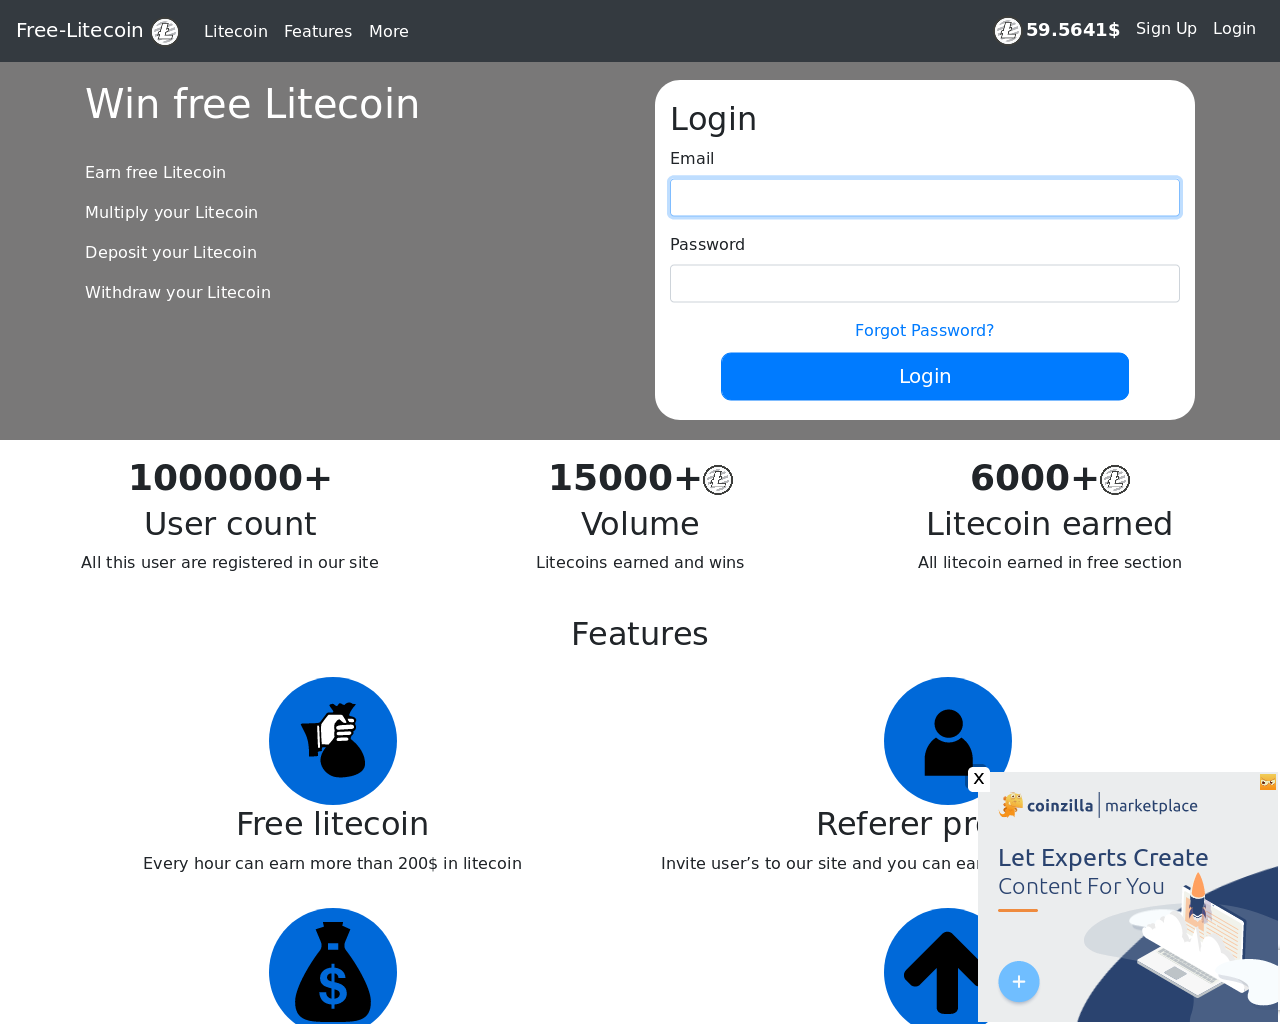 Free Litecoin